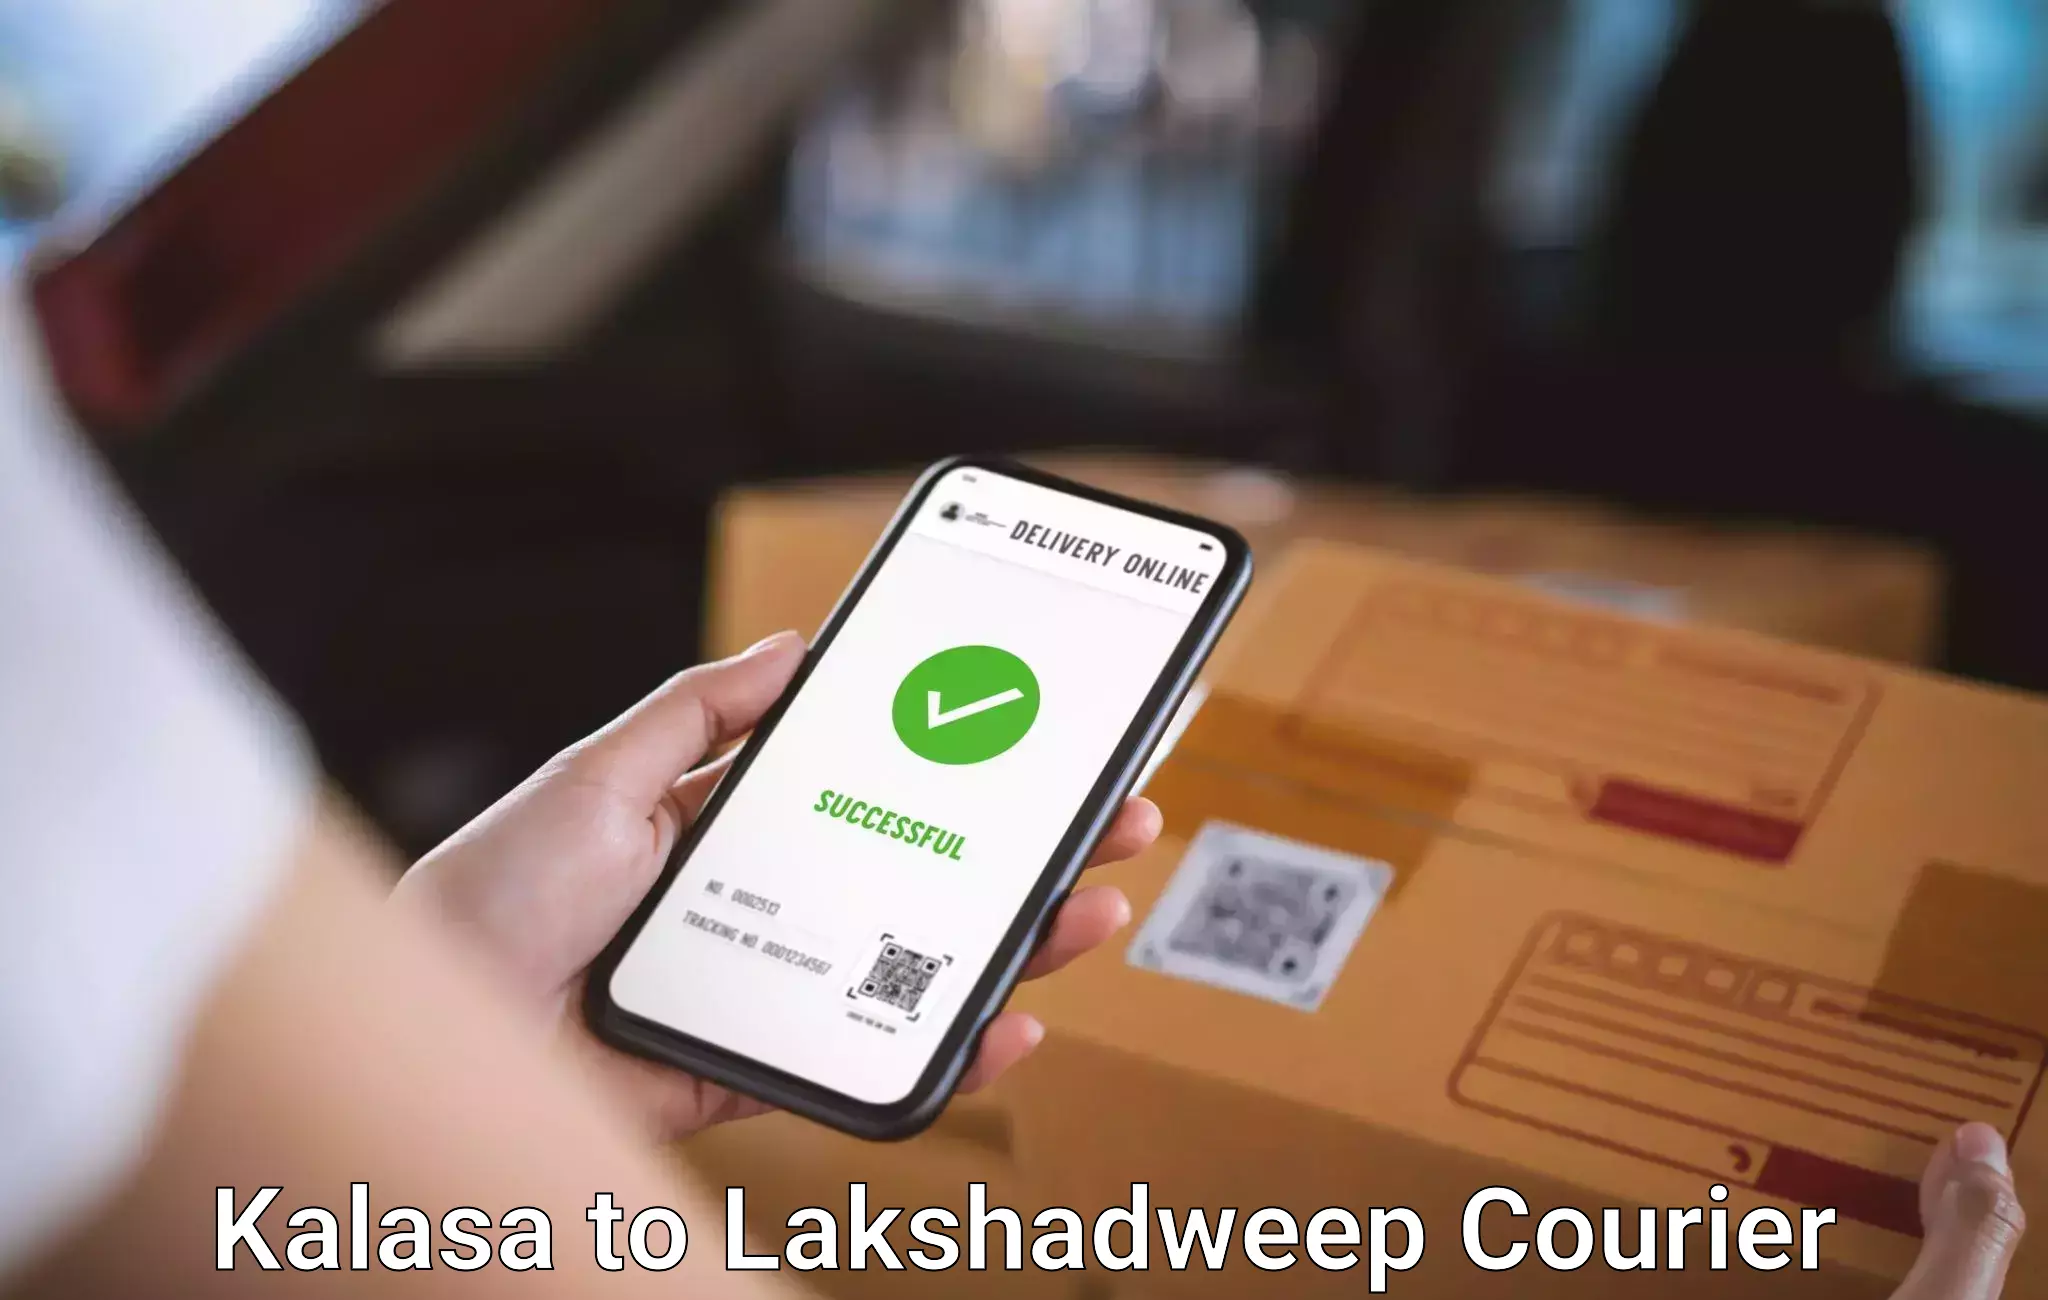 Baggage shipping experts Kalasa to Lakshadweep